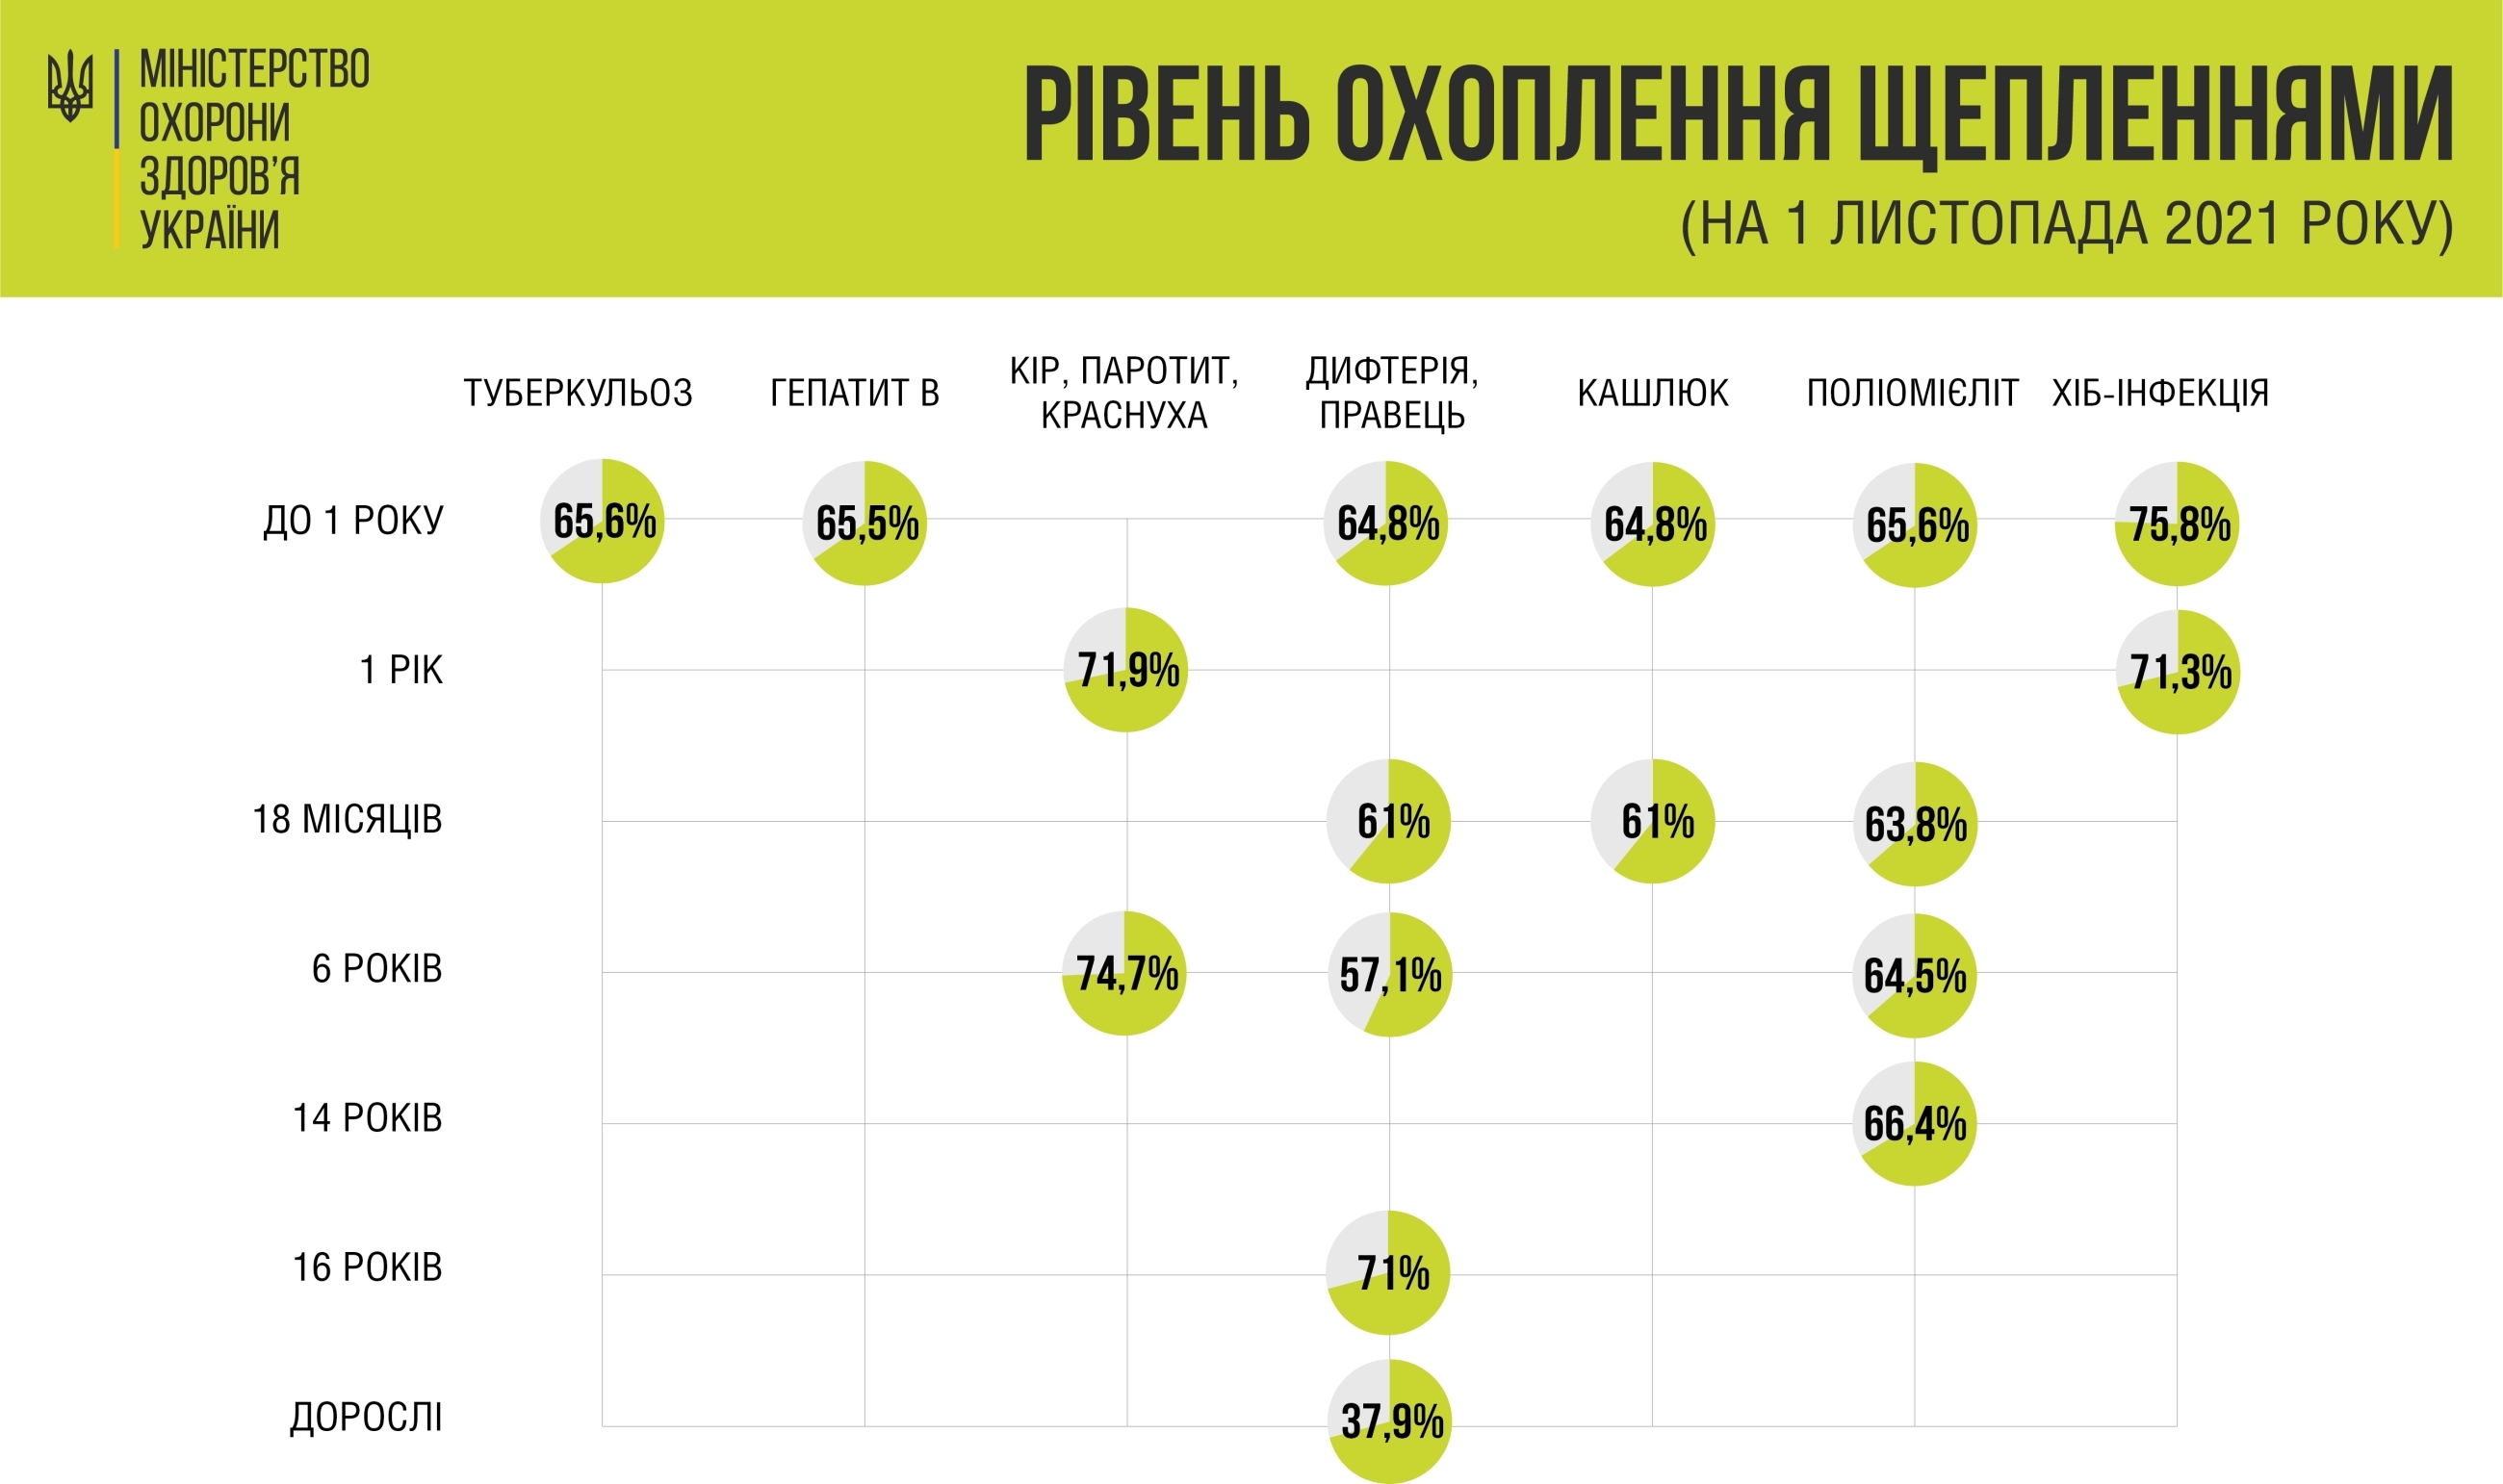 Рівень щеплення від гепатиту В в Україні становить 65,5%